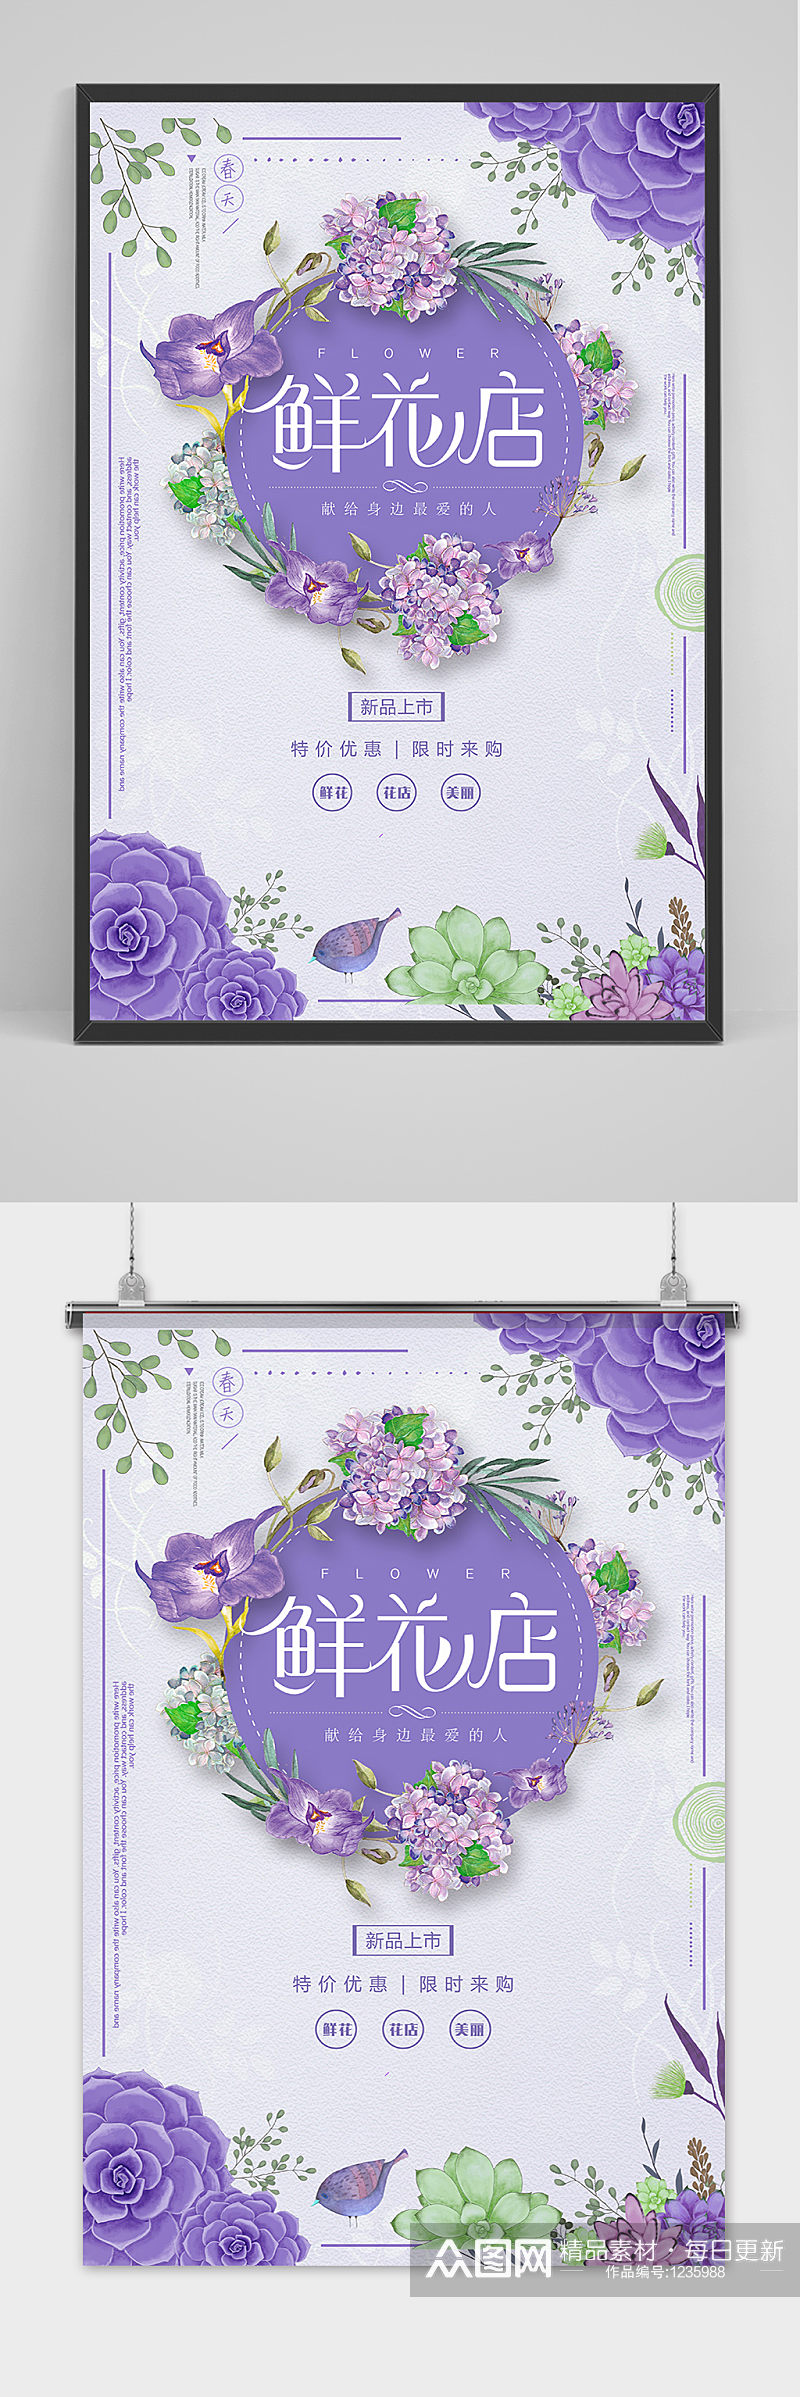 紫色浪漫鲜花店海报素材